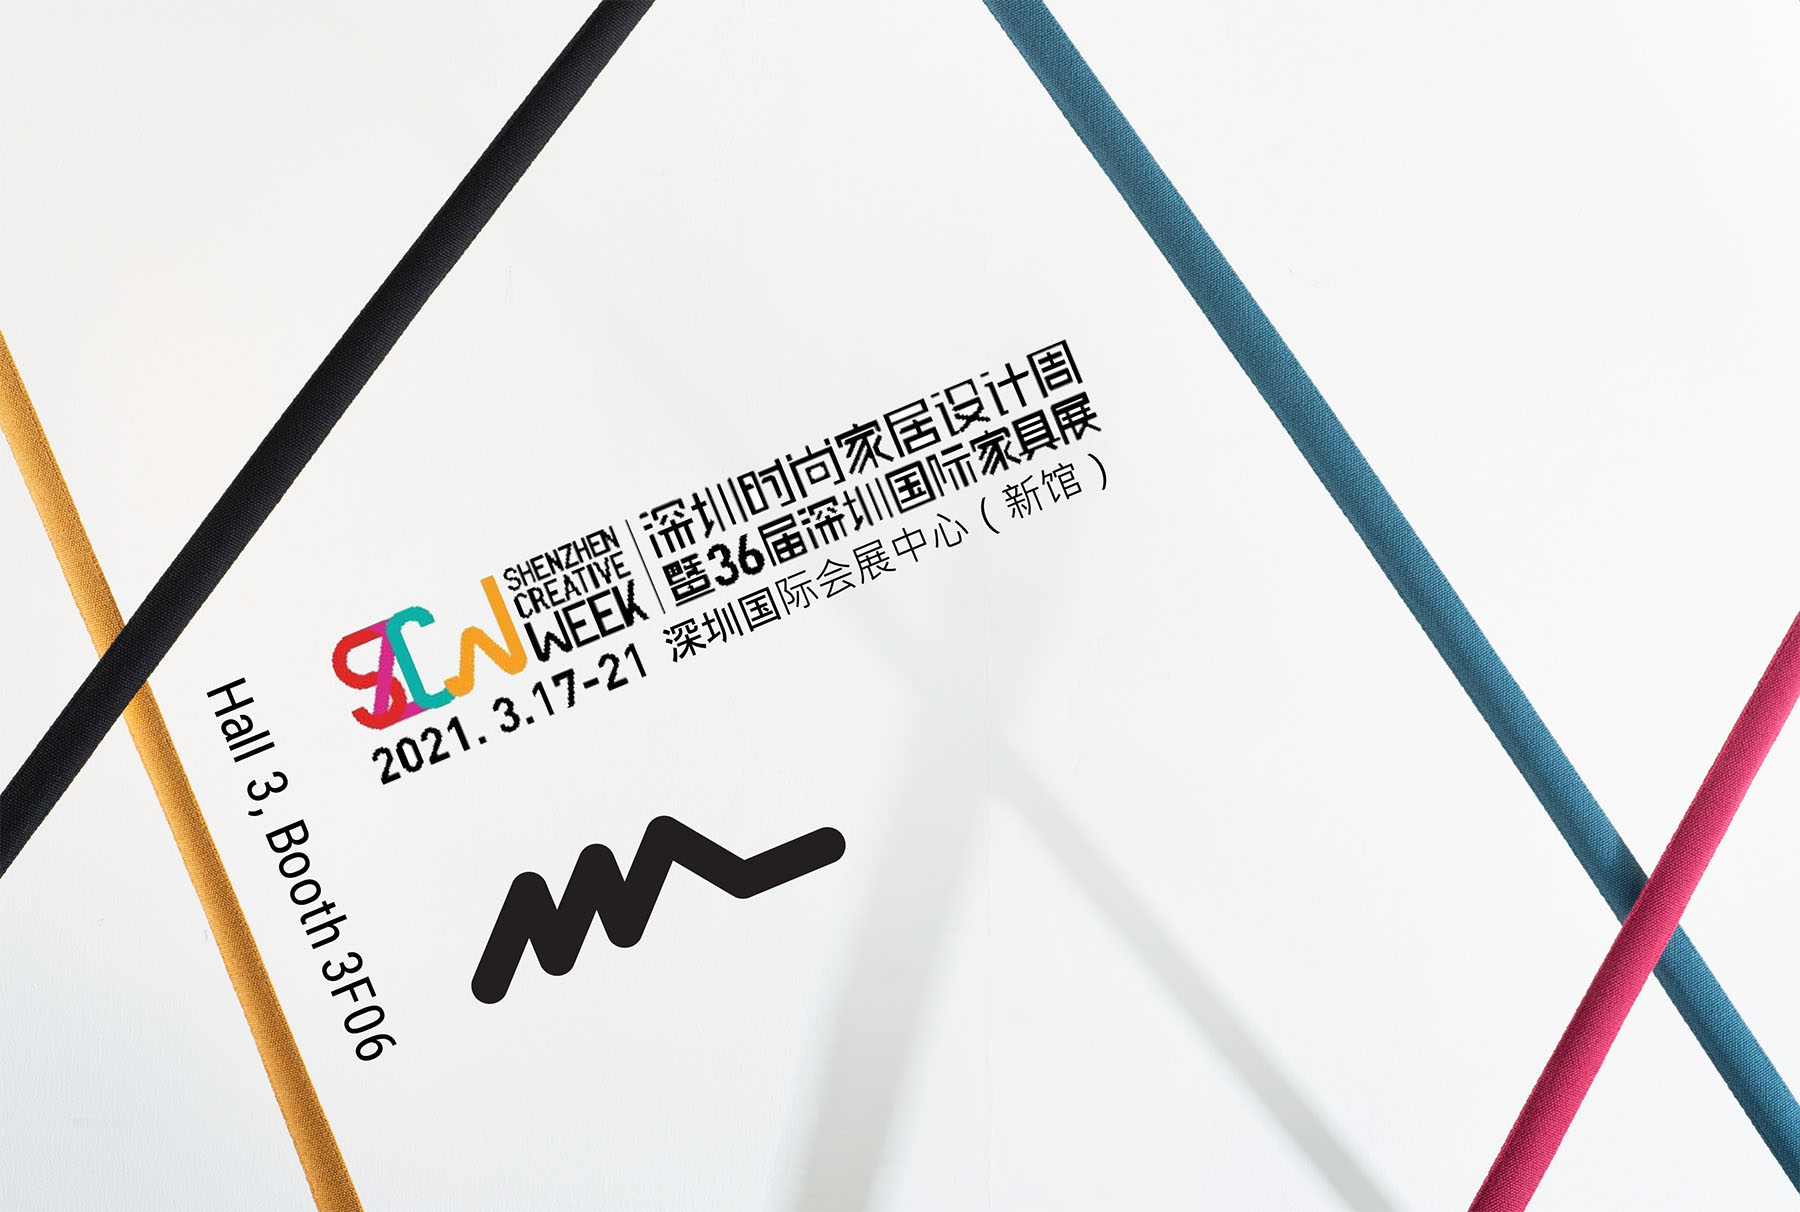 Shenzhen Creative Week 17 - 21 Mars 2021